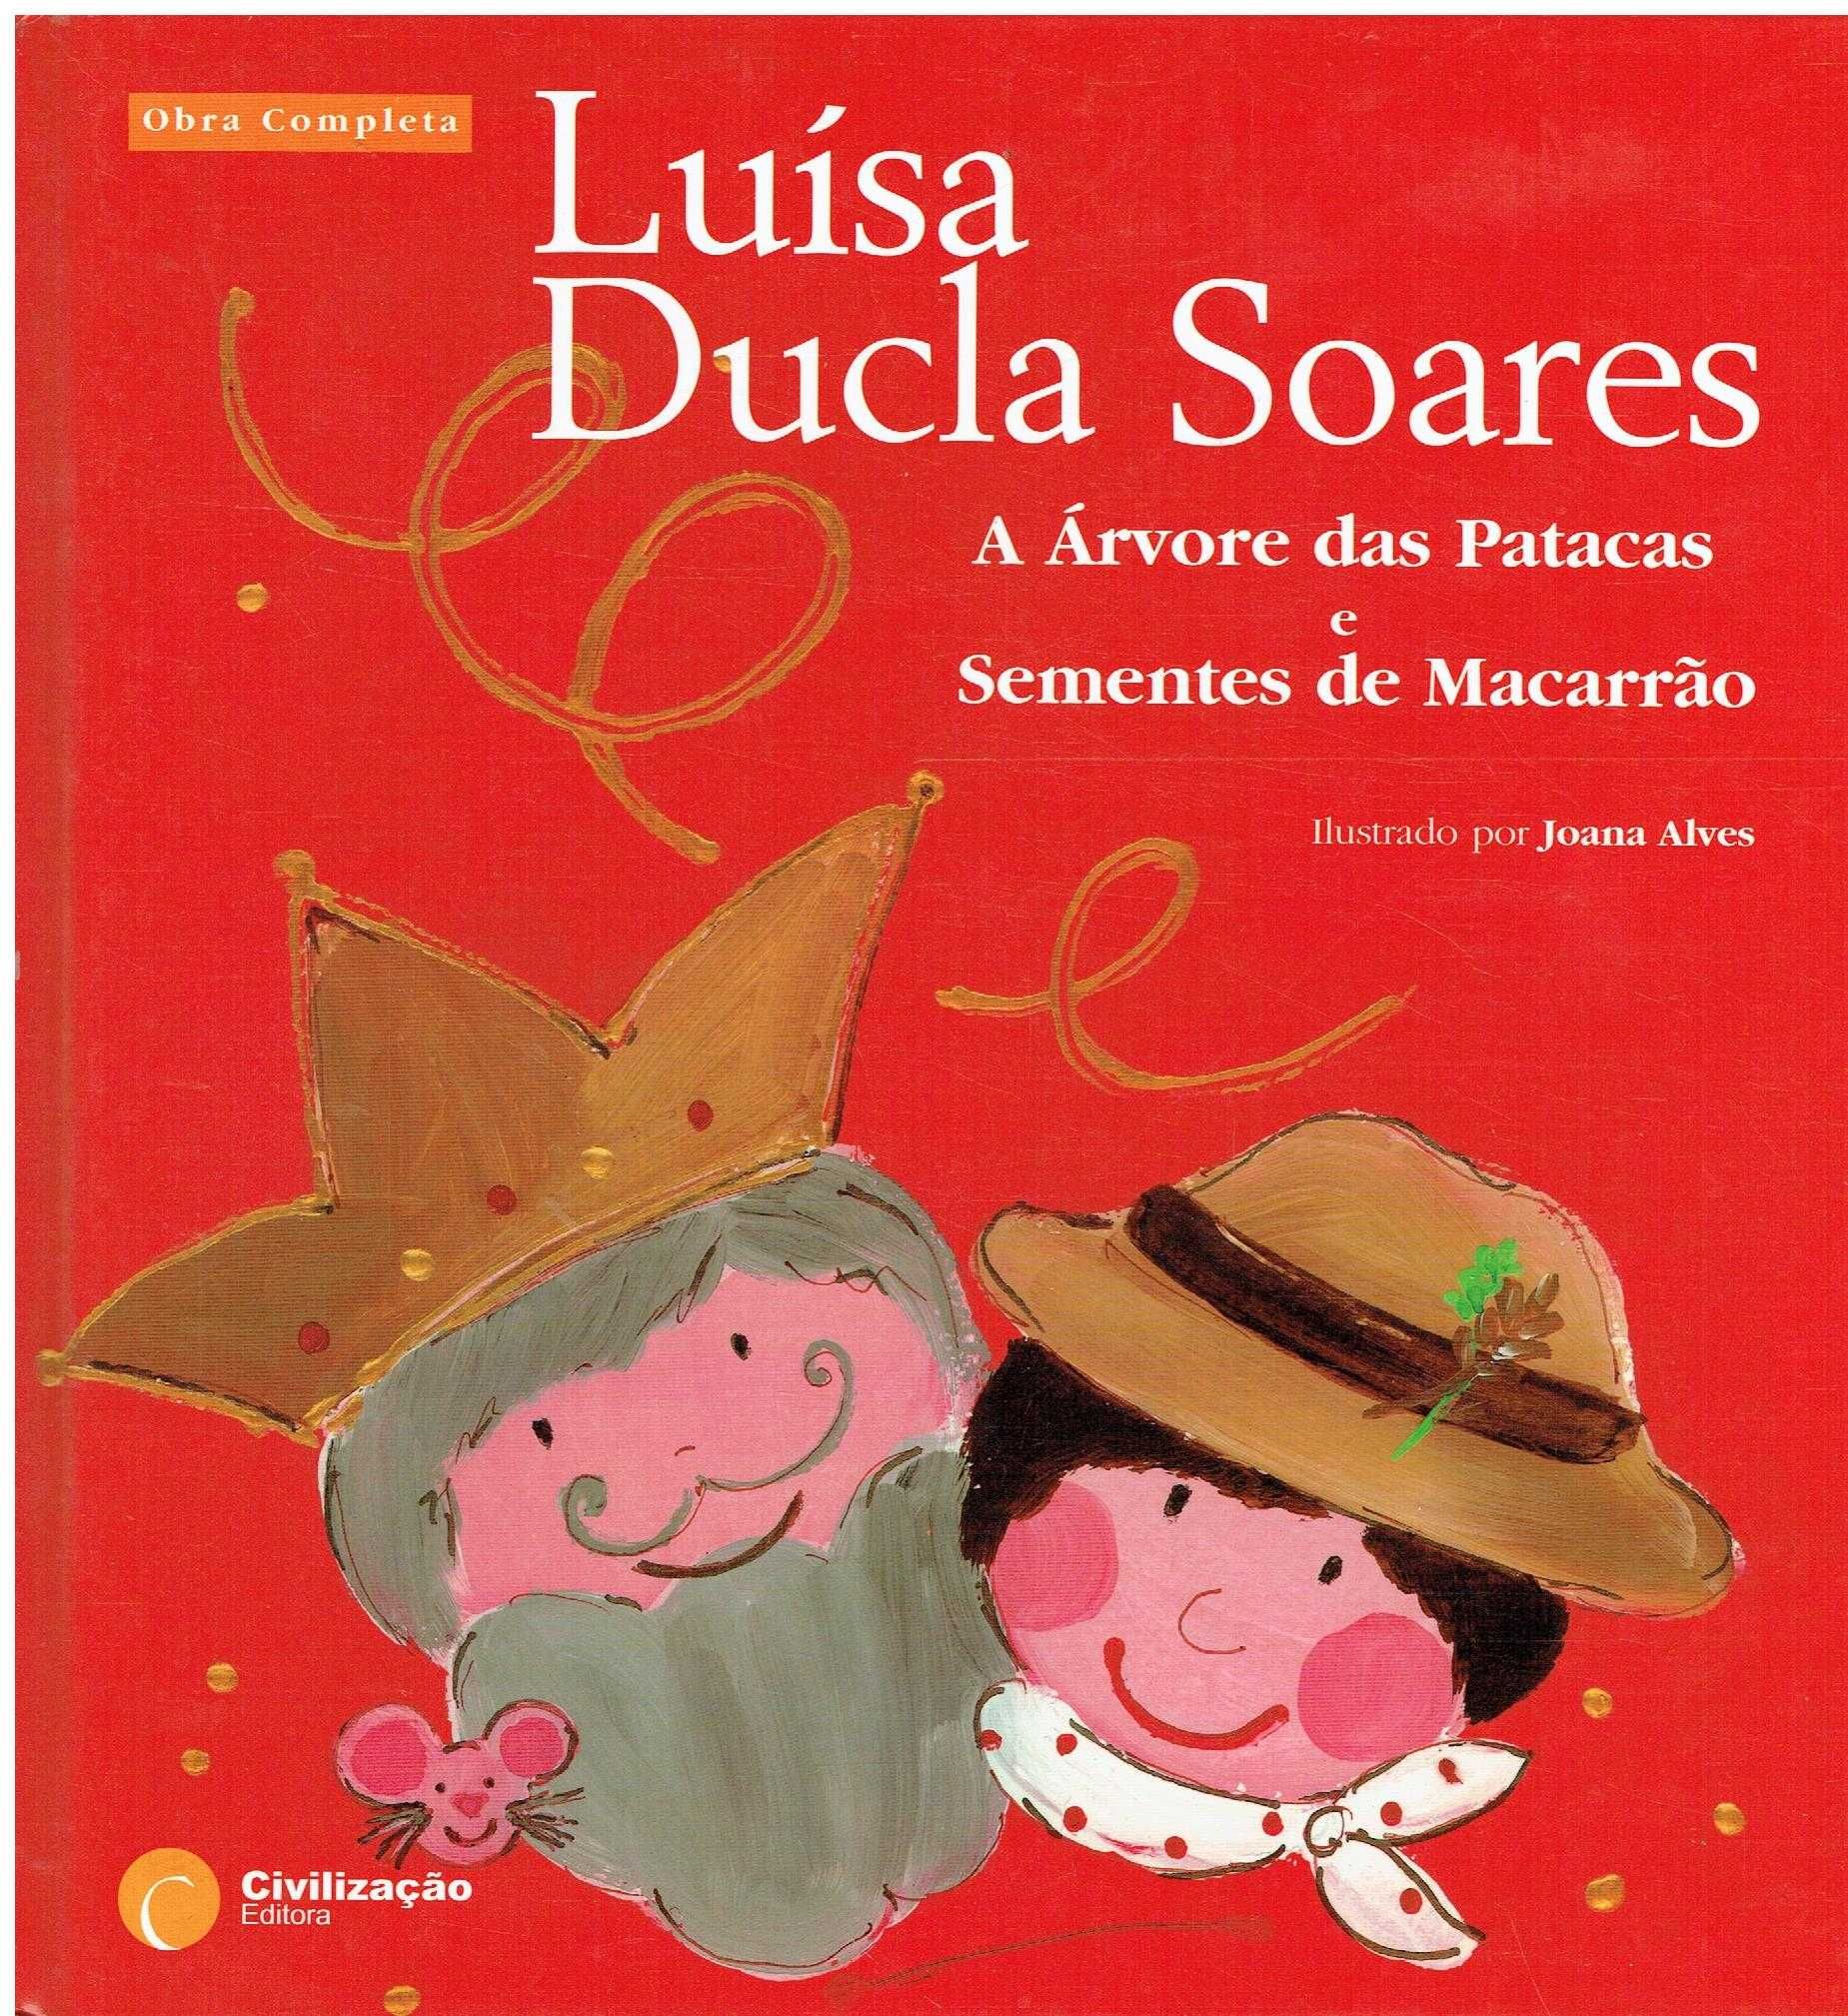 7296
A Árvore das Patacas e Sementes de Macarrão
de Luísa Ducla Soares